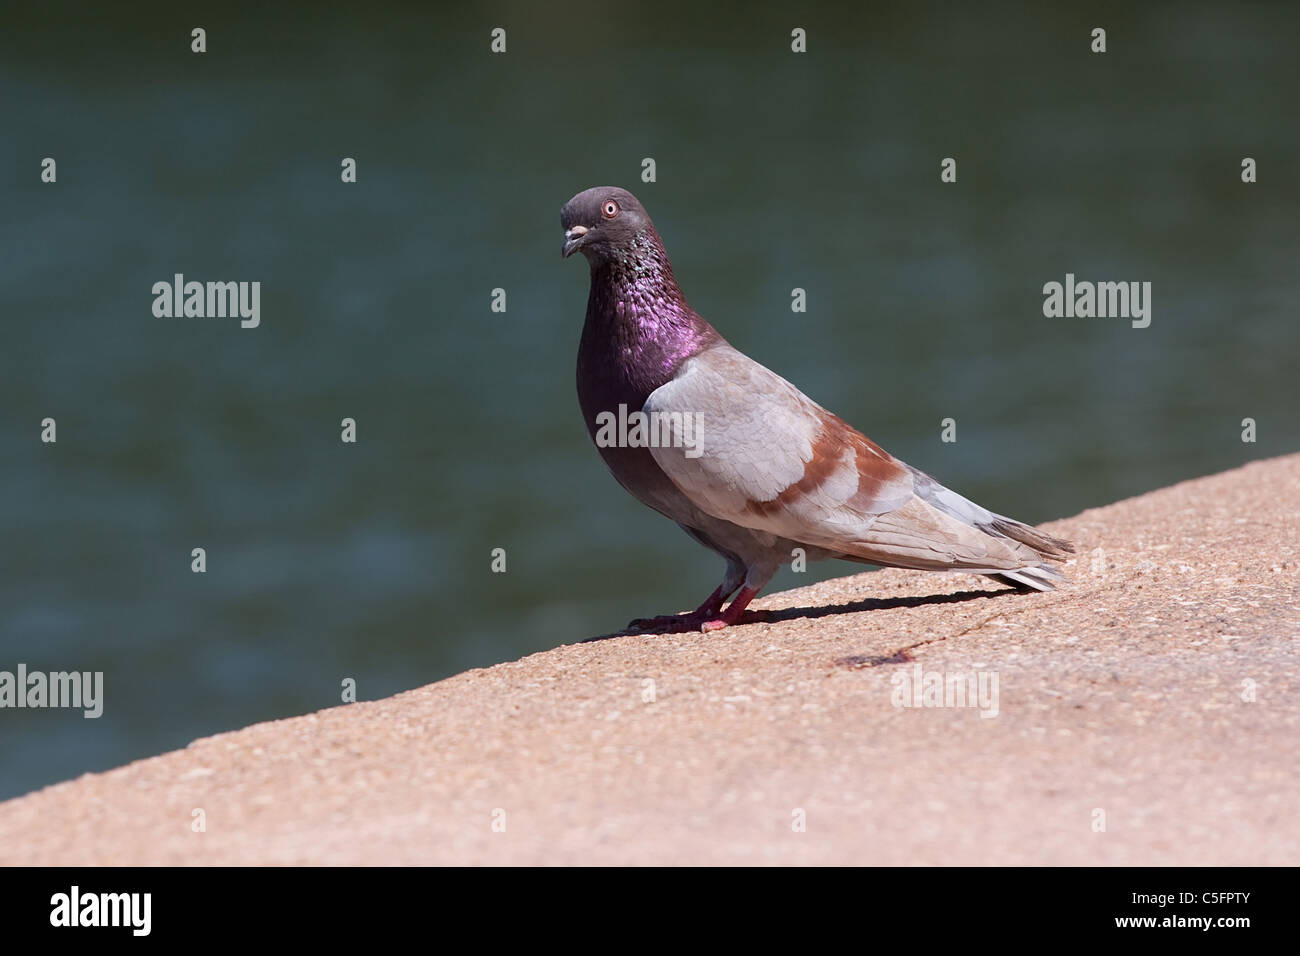 Nahaufnahme einer Taube mit schönen violetten Färbung. Geringe Schärfentiefe. Stockfoto